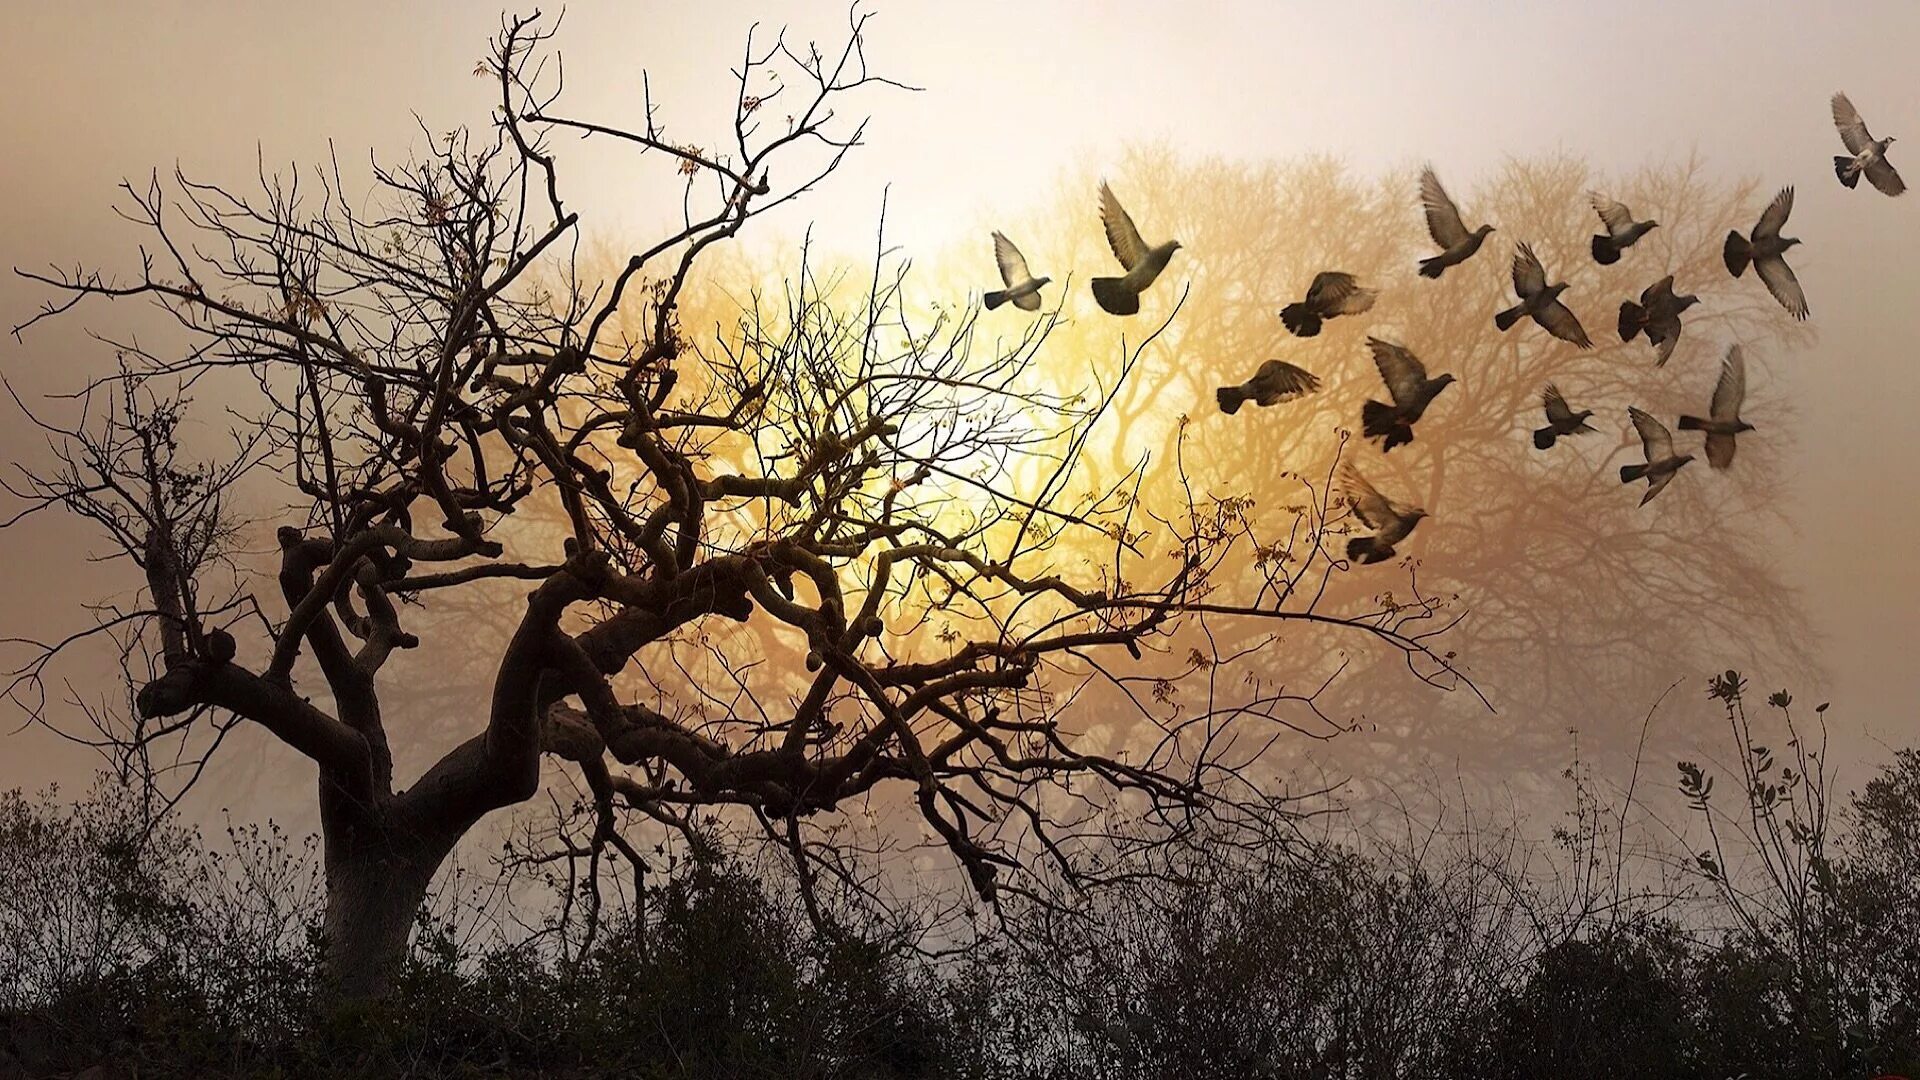 Птицы кроны деревьев. Птица над деревом. Пейзаж сухое дерево. Стая птиц. Дерево и разлетающиеся птицы.